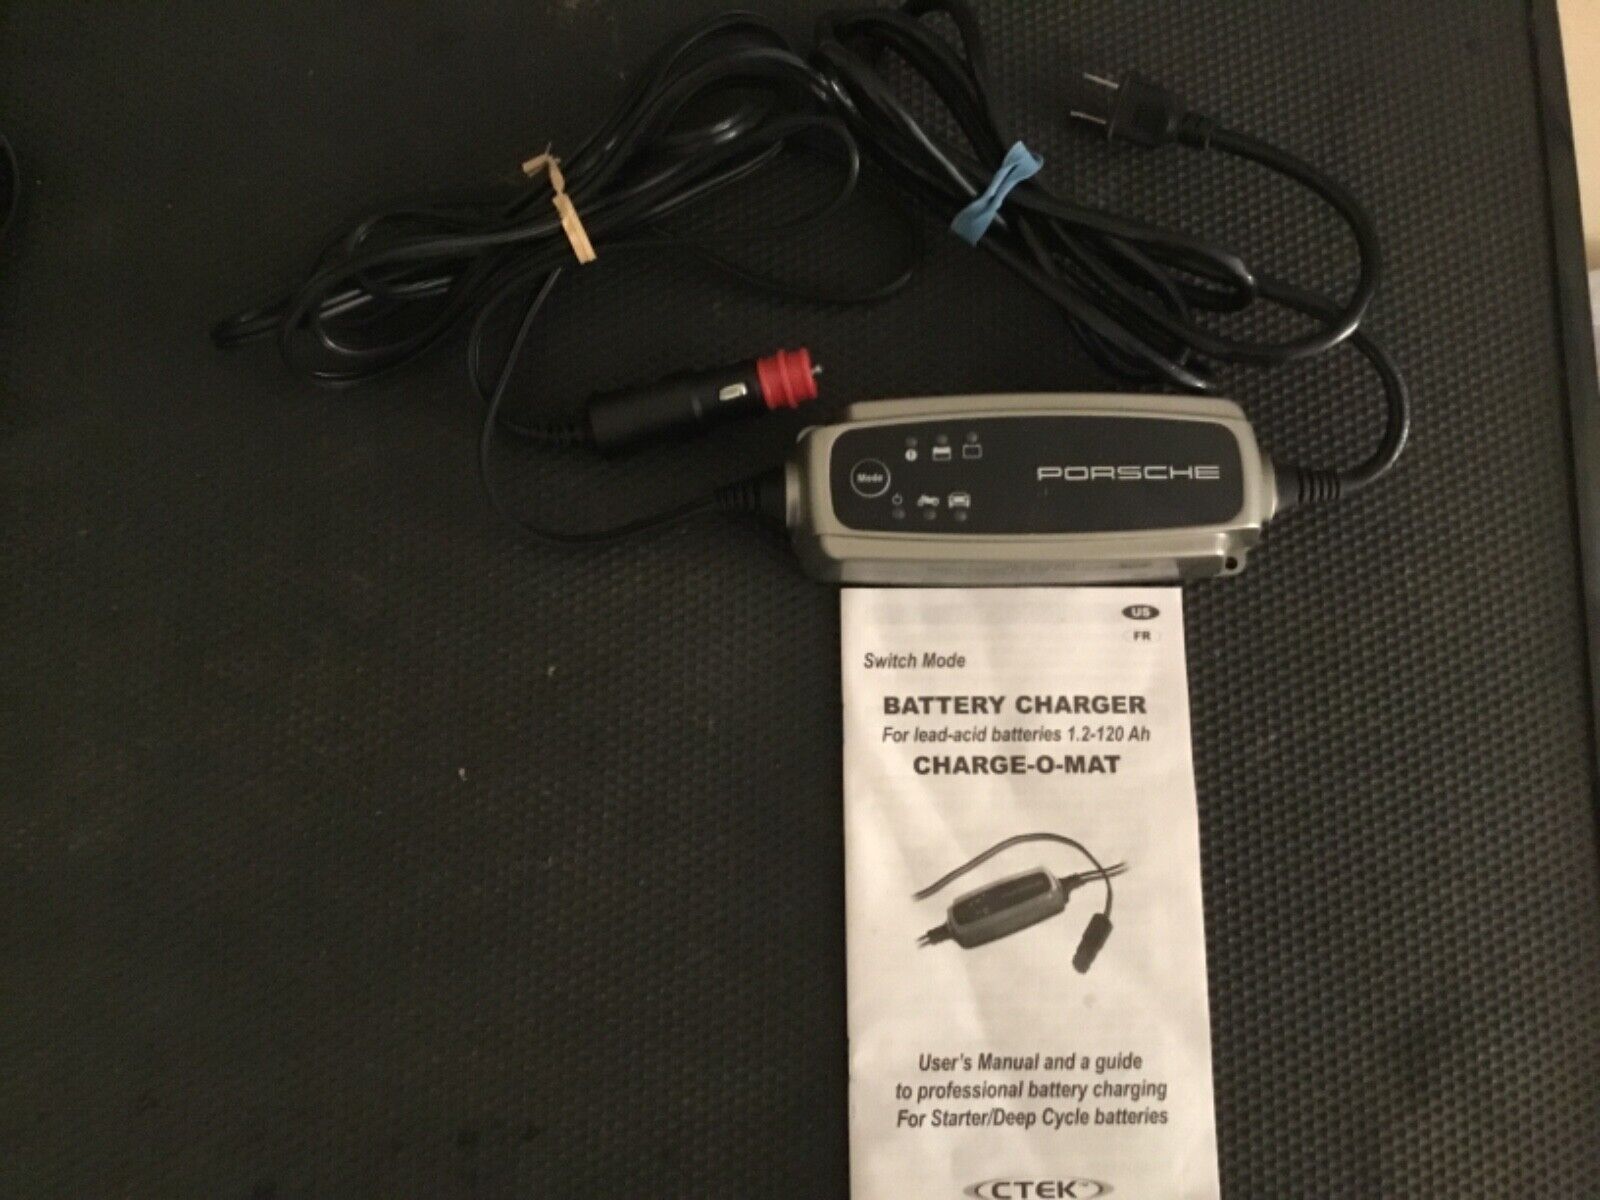 CTEK Porsche battery charger